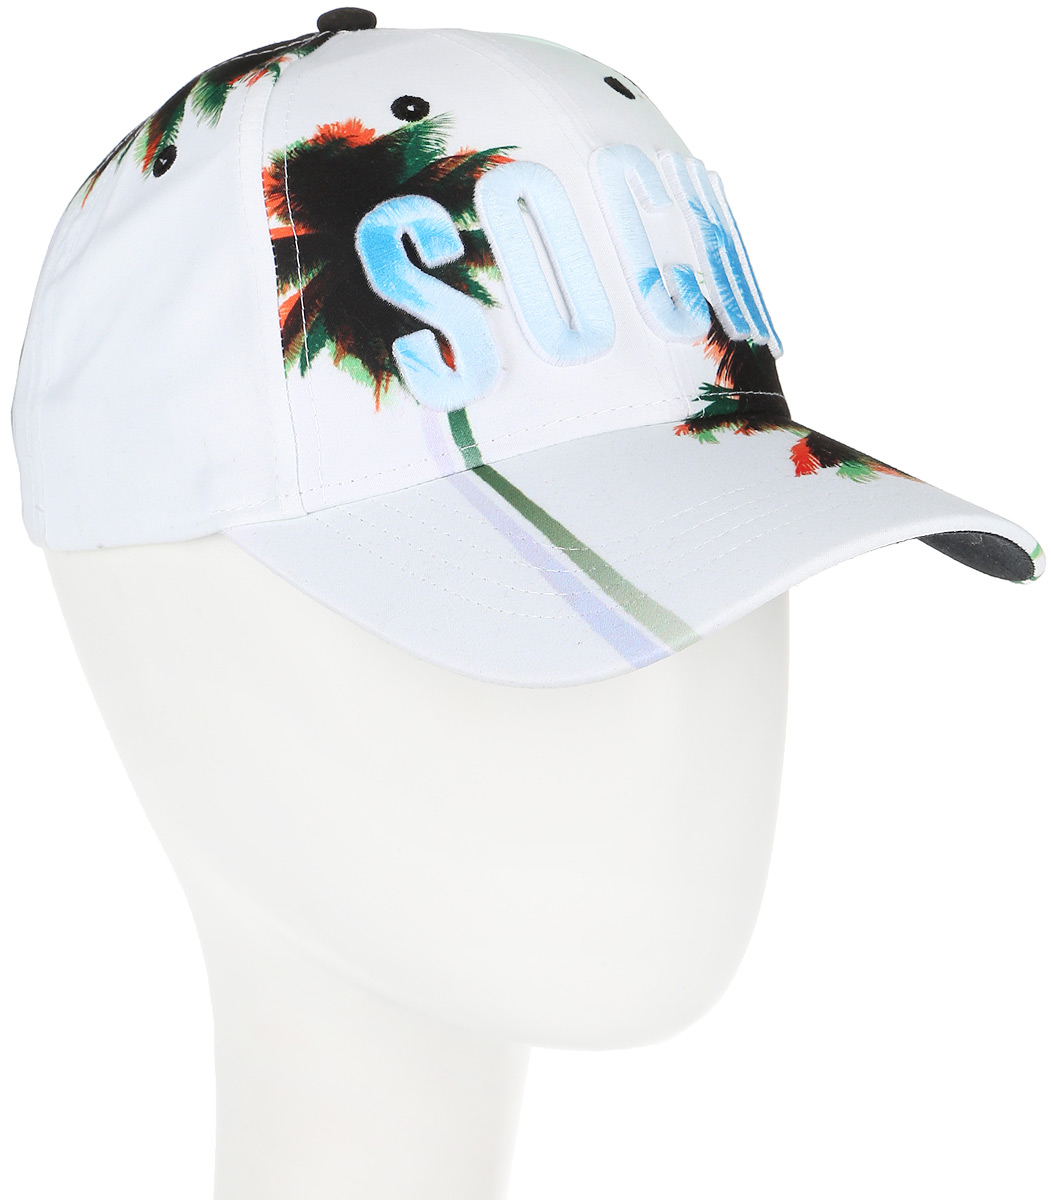 Бейсболка Robin Ruth Sochi, цвет: белый, зеленый, голубой. CRUS102-B. Размер универсальный